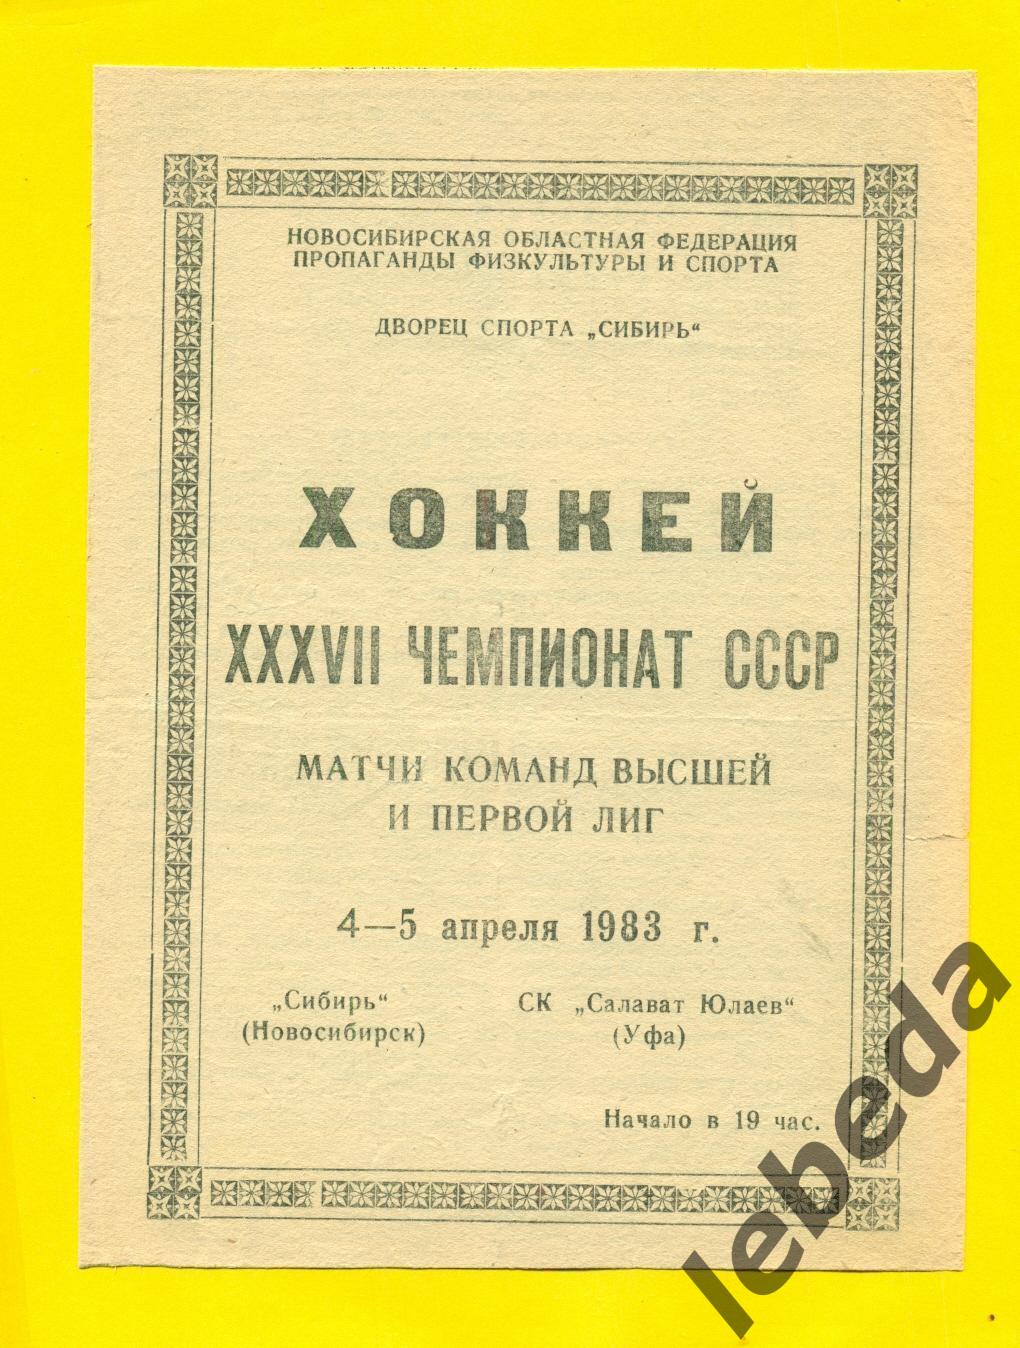 Сибирь Новосибирск - Салават Юлаев Уфа - 1982 / 1983 г.(4-5.04.83.)